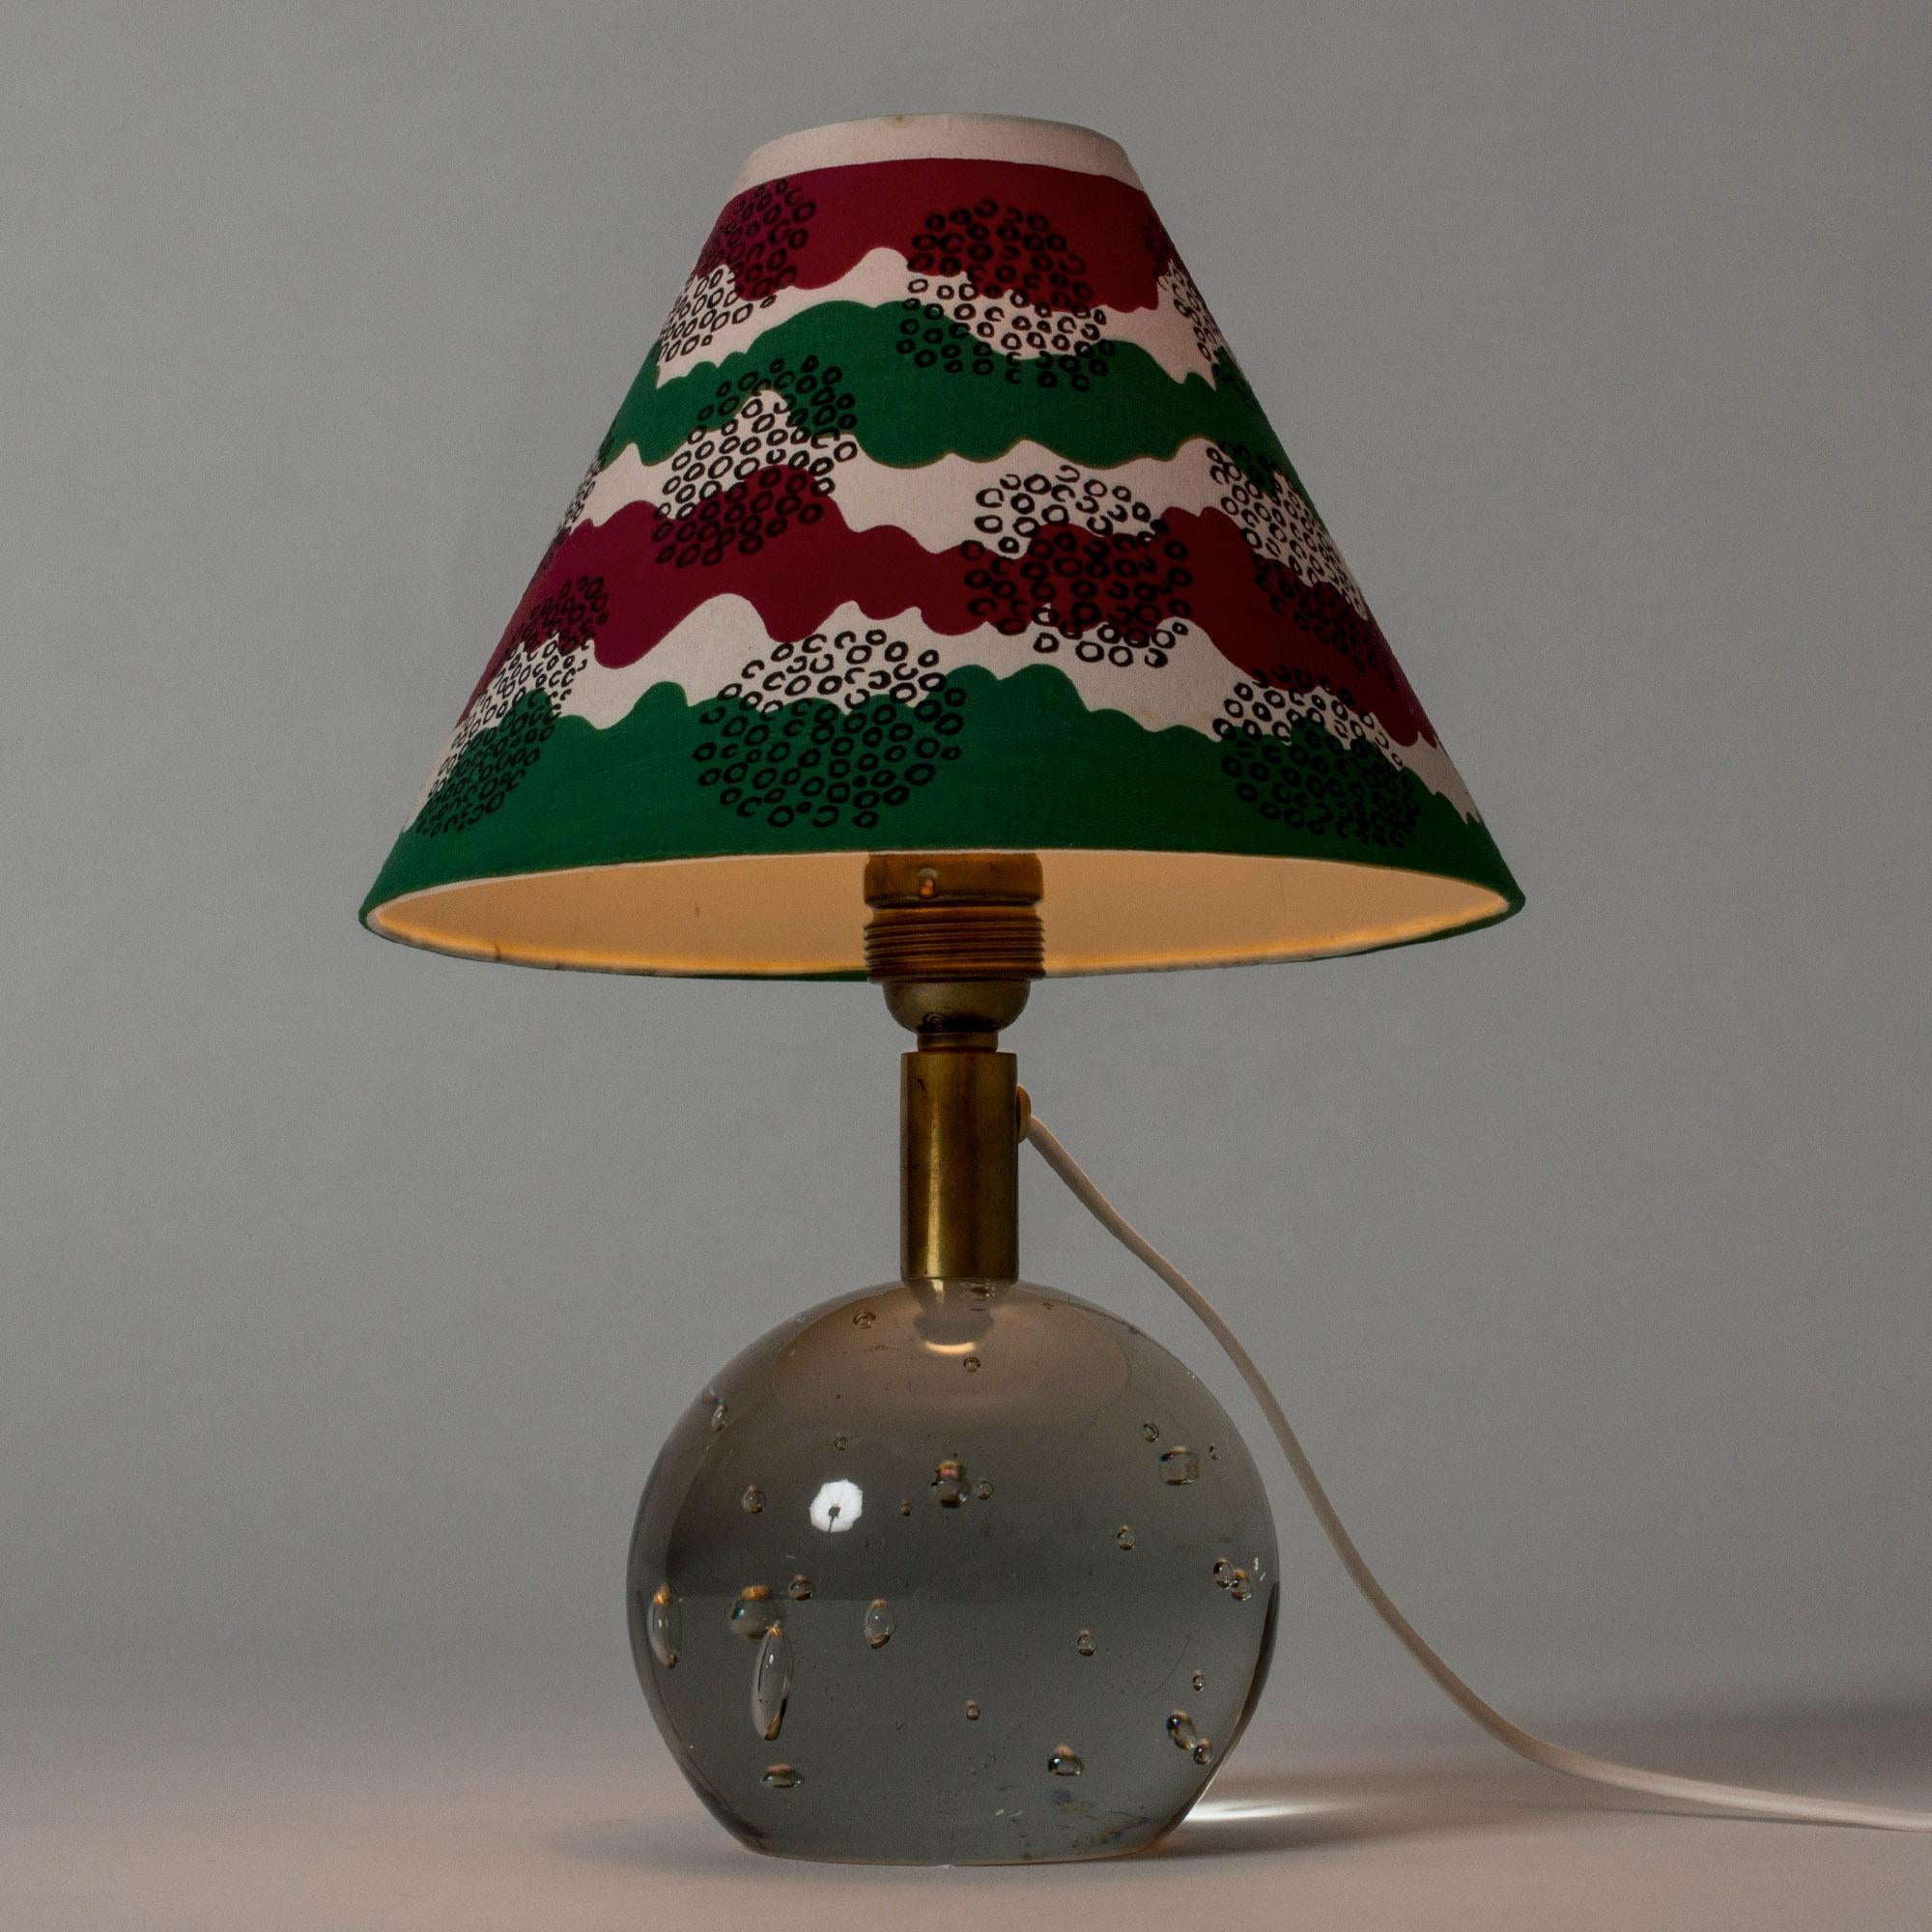 Scandinavian Modern Glass Table Lamp Designed by Josef Frank for Svenskt Tenn, Sweden, 1940s